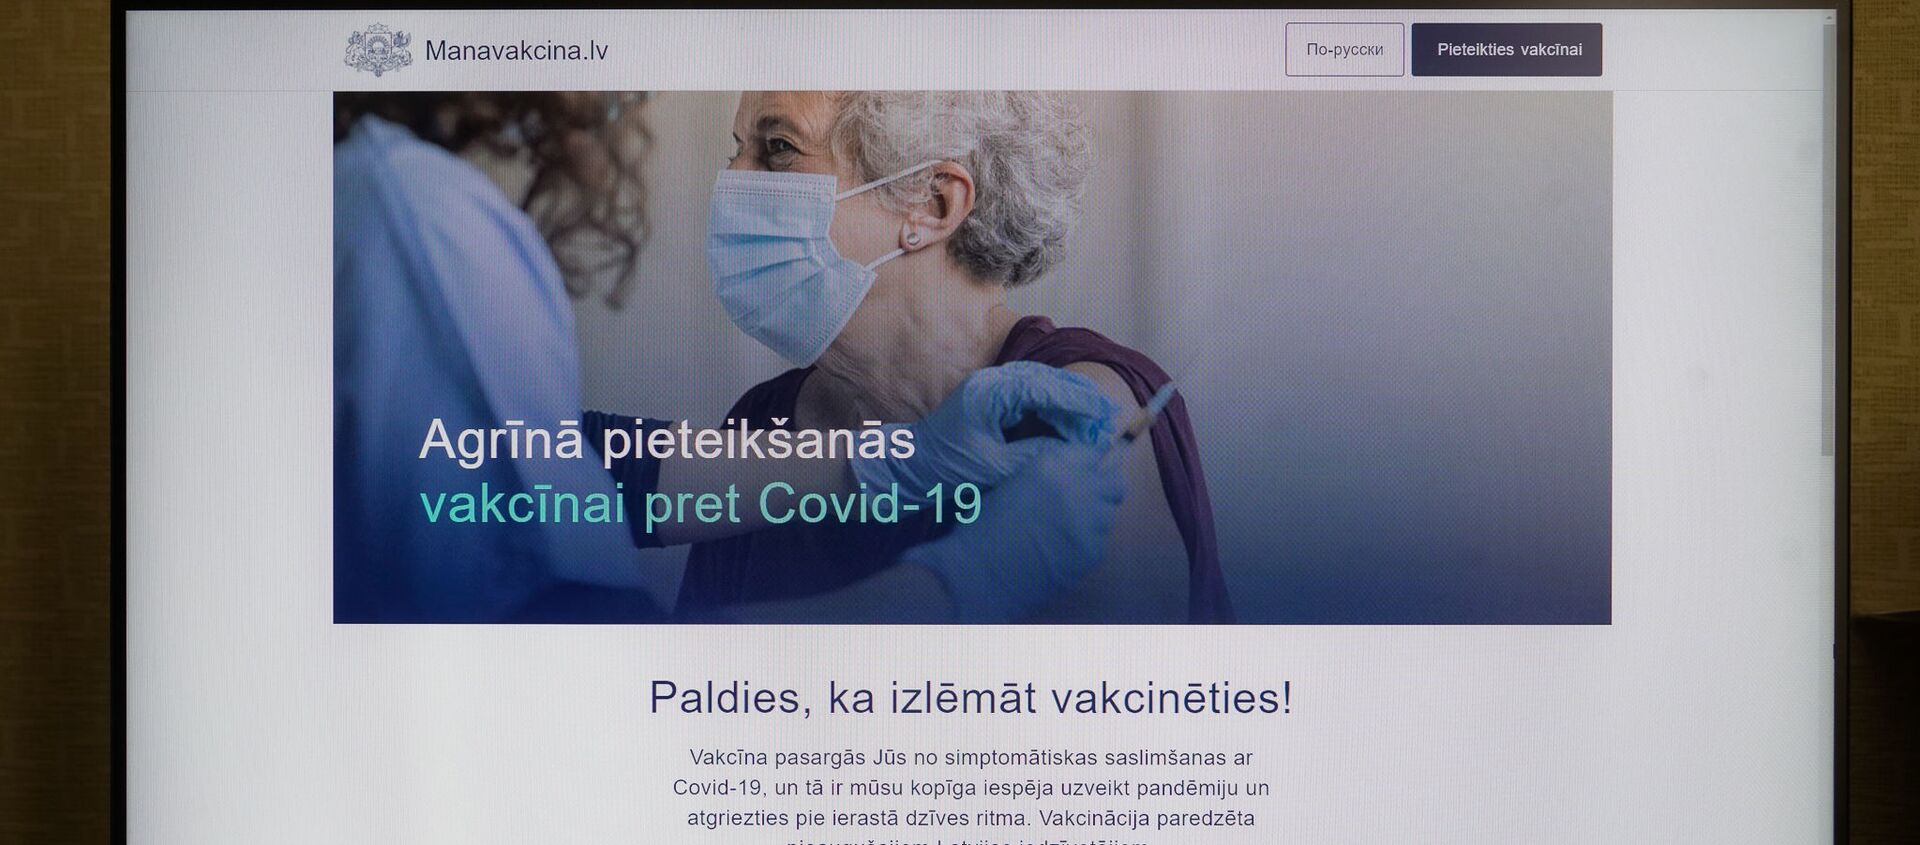 Латвийский сайт manavakcina.lv для подачи заявки на вакцинацию от COVID-19 - Sputnik Латвия, 1920, 26.03.2021